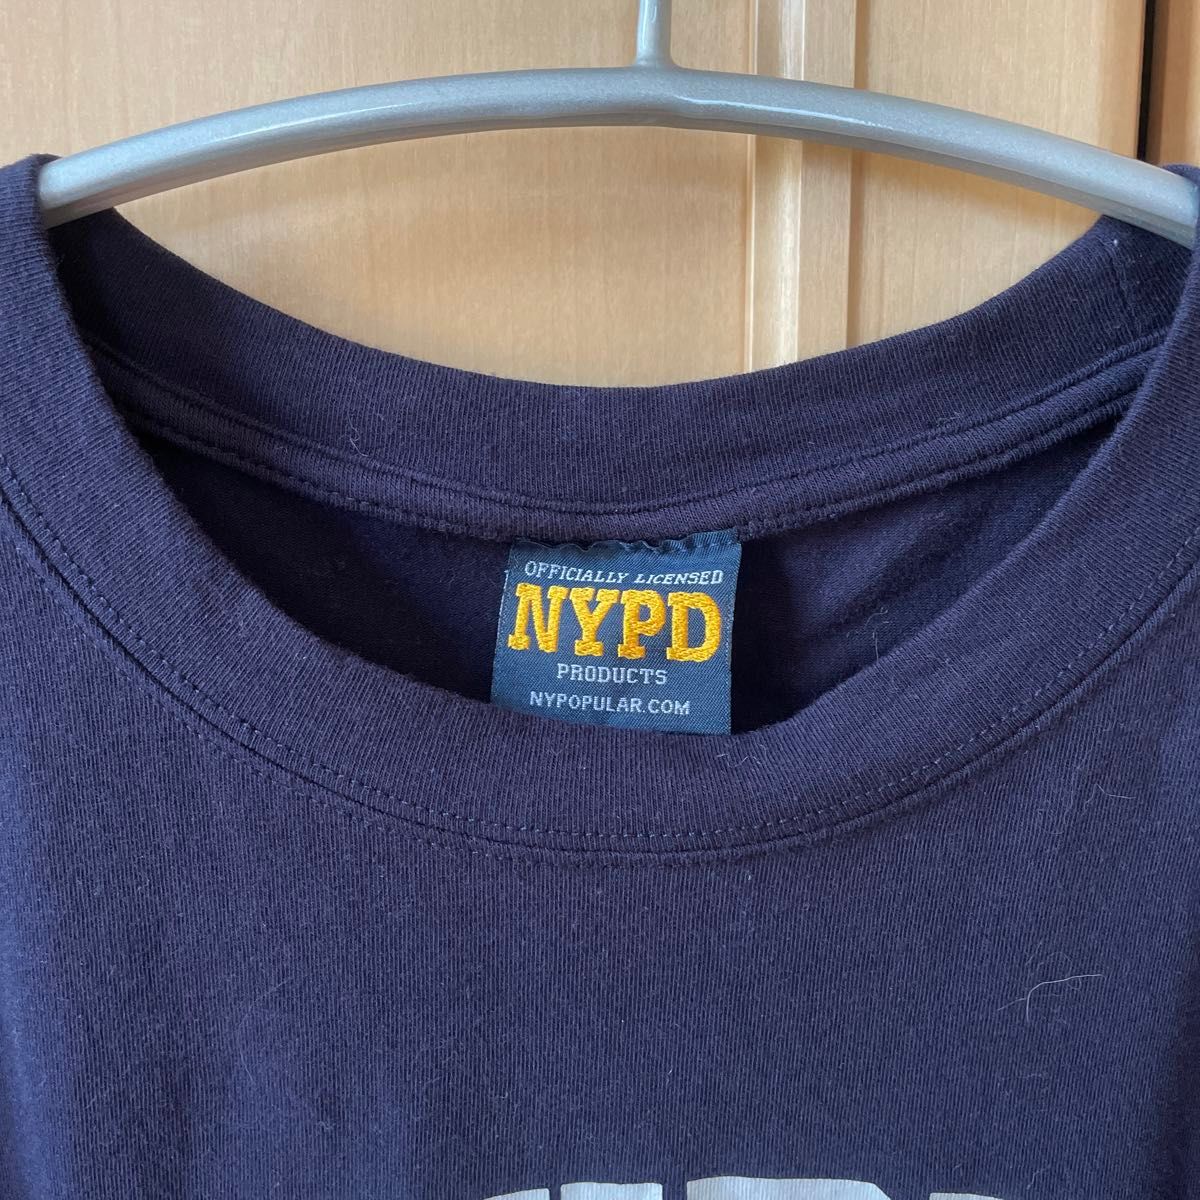 NYPDのTシャツ